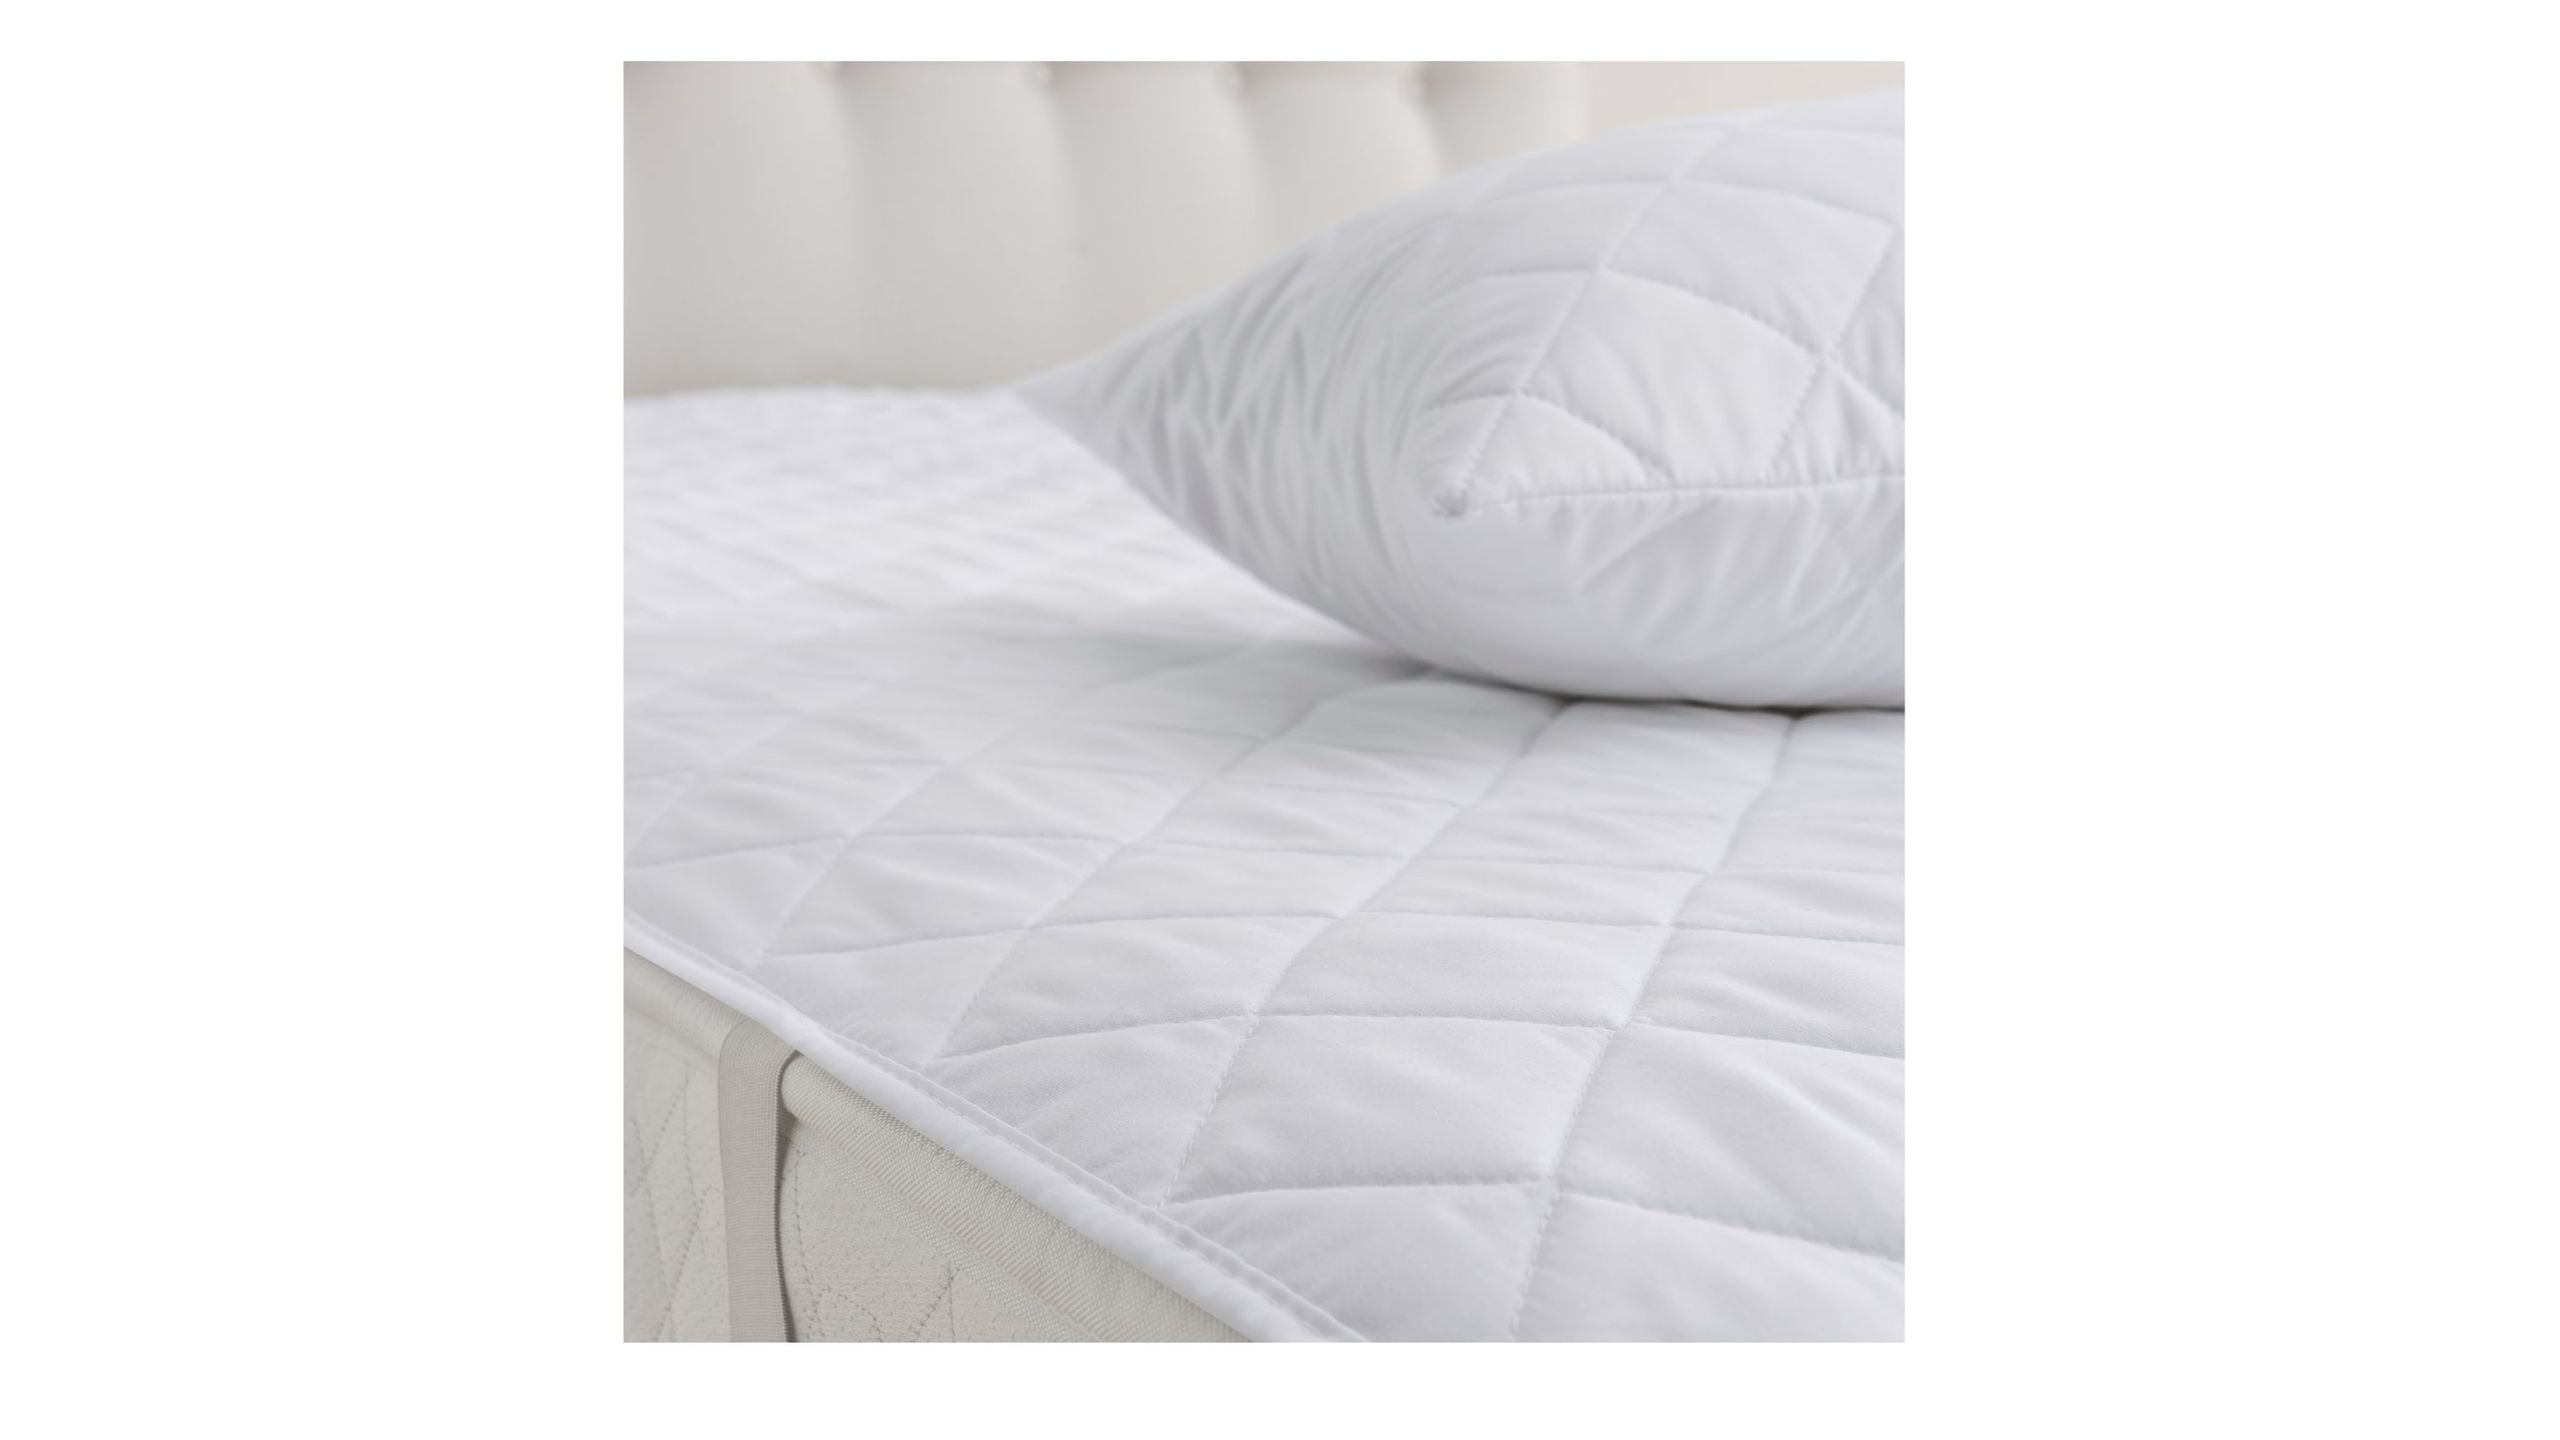 A legjobb matracvédő: Silentnight Anti-Allergy Matracvédő